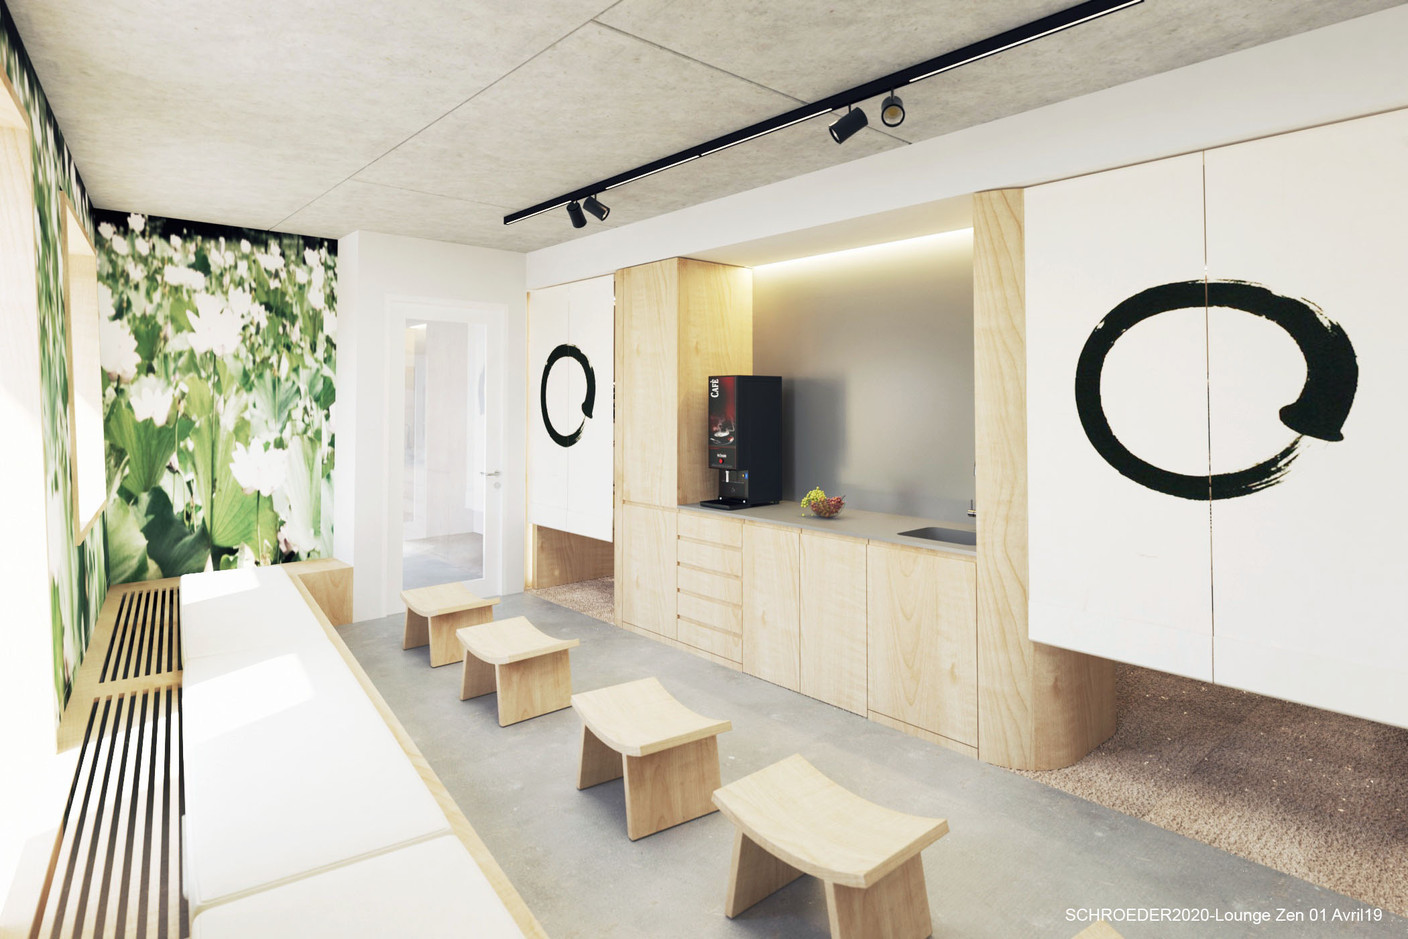 Vue de l’espace «lounge» zen. (Illustration: Architecture & Urbanisme 21)